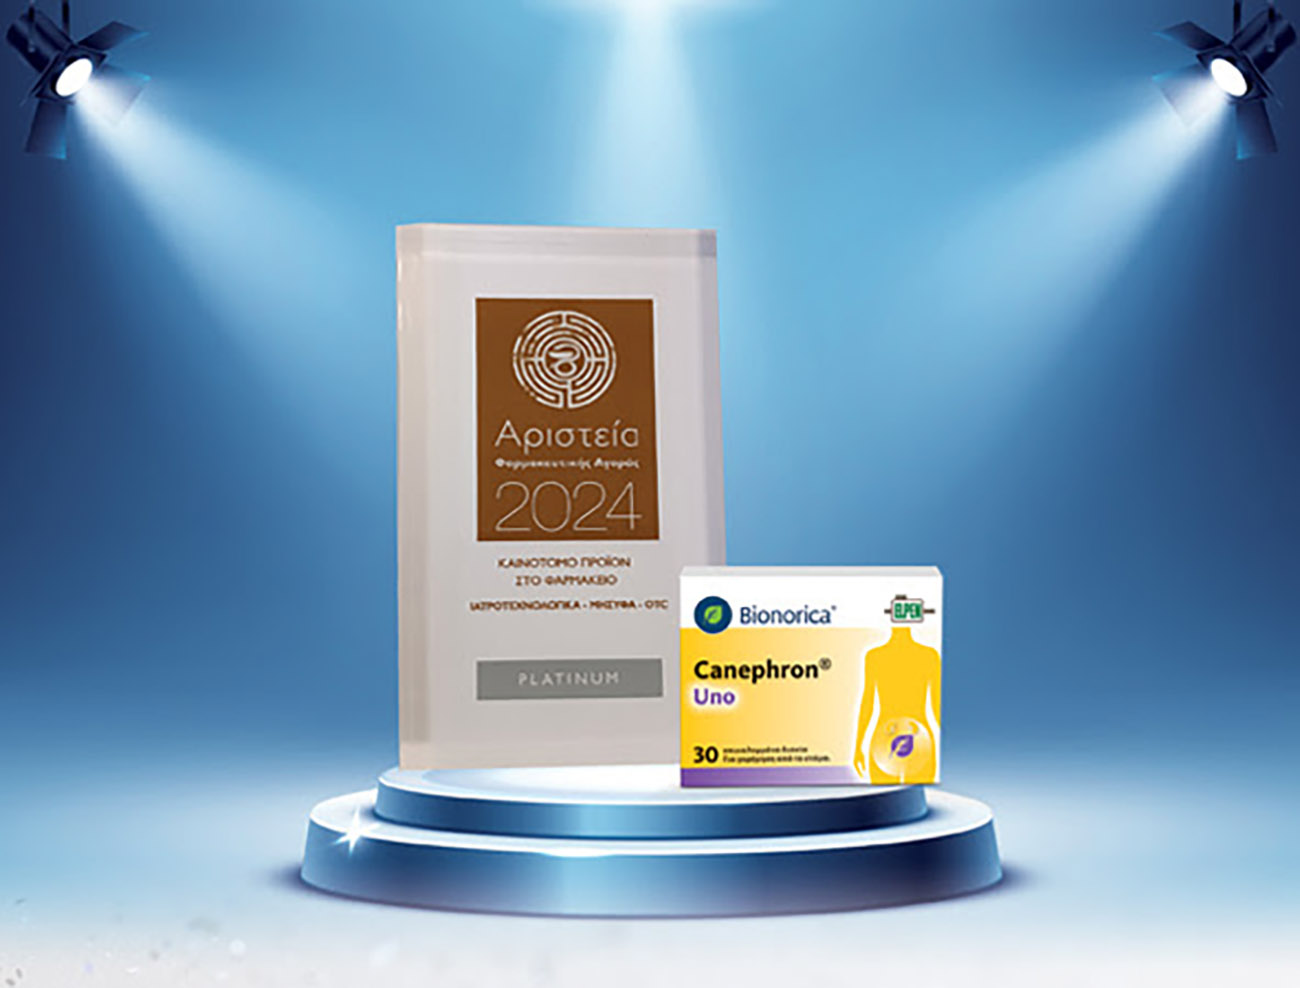 Πλατινένιο βραβείο για το Canephron® Uno στα «Αριστεία Φαρμακευτικής Αγοράς 2024»